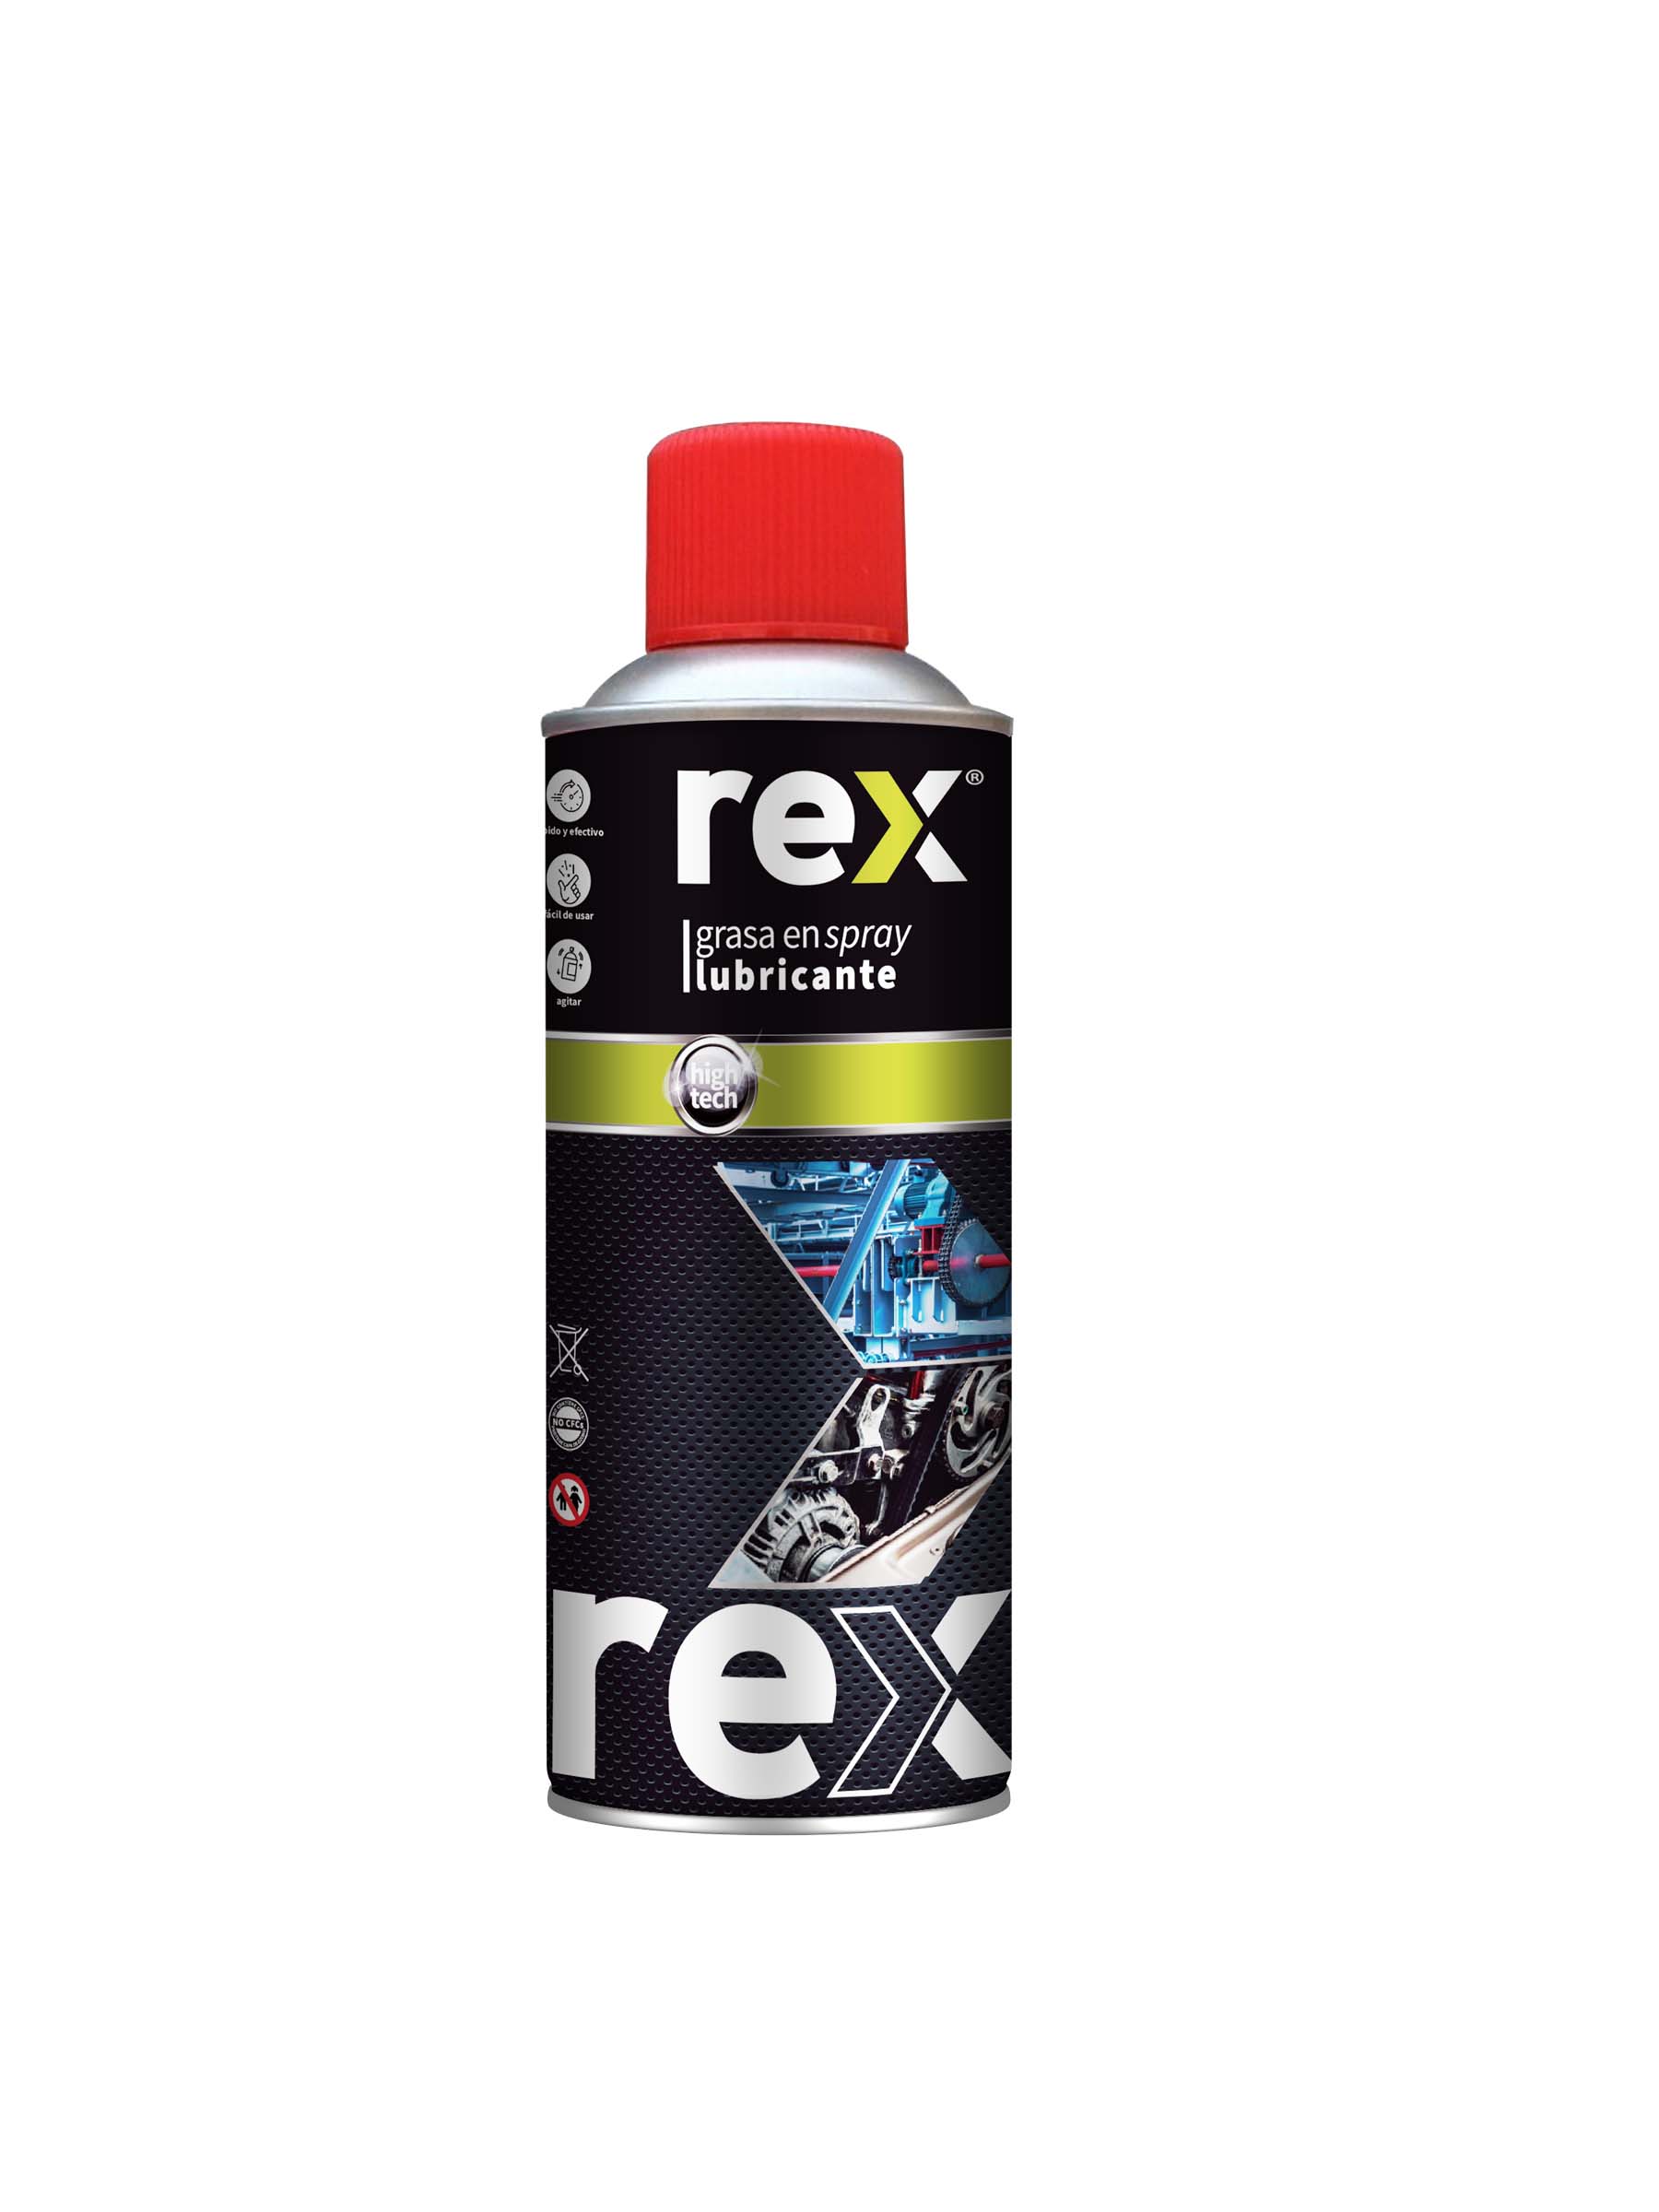 Rex Grasa en Spray Lubricante